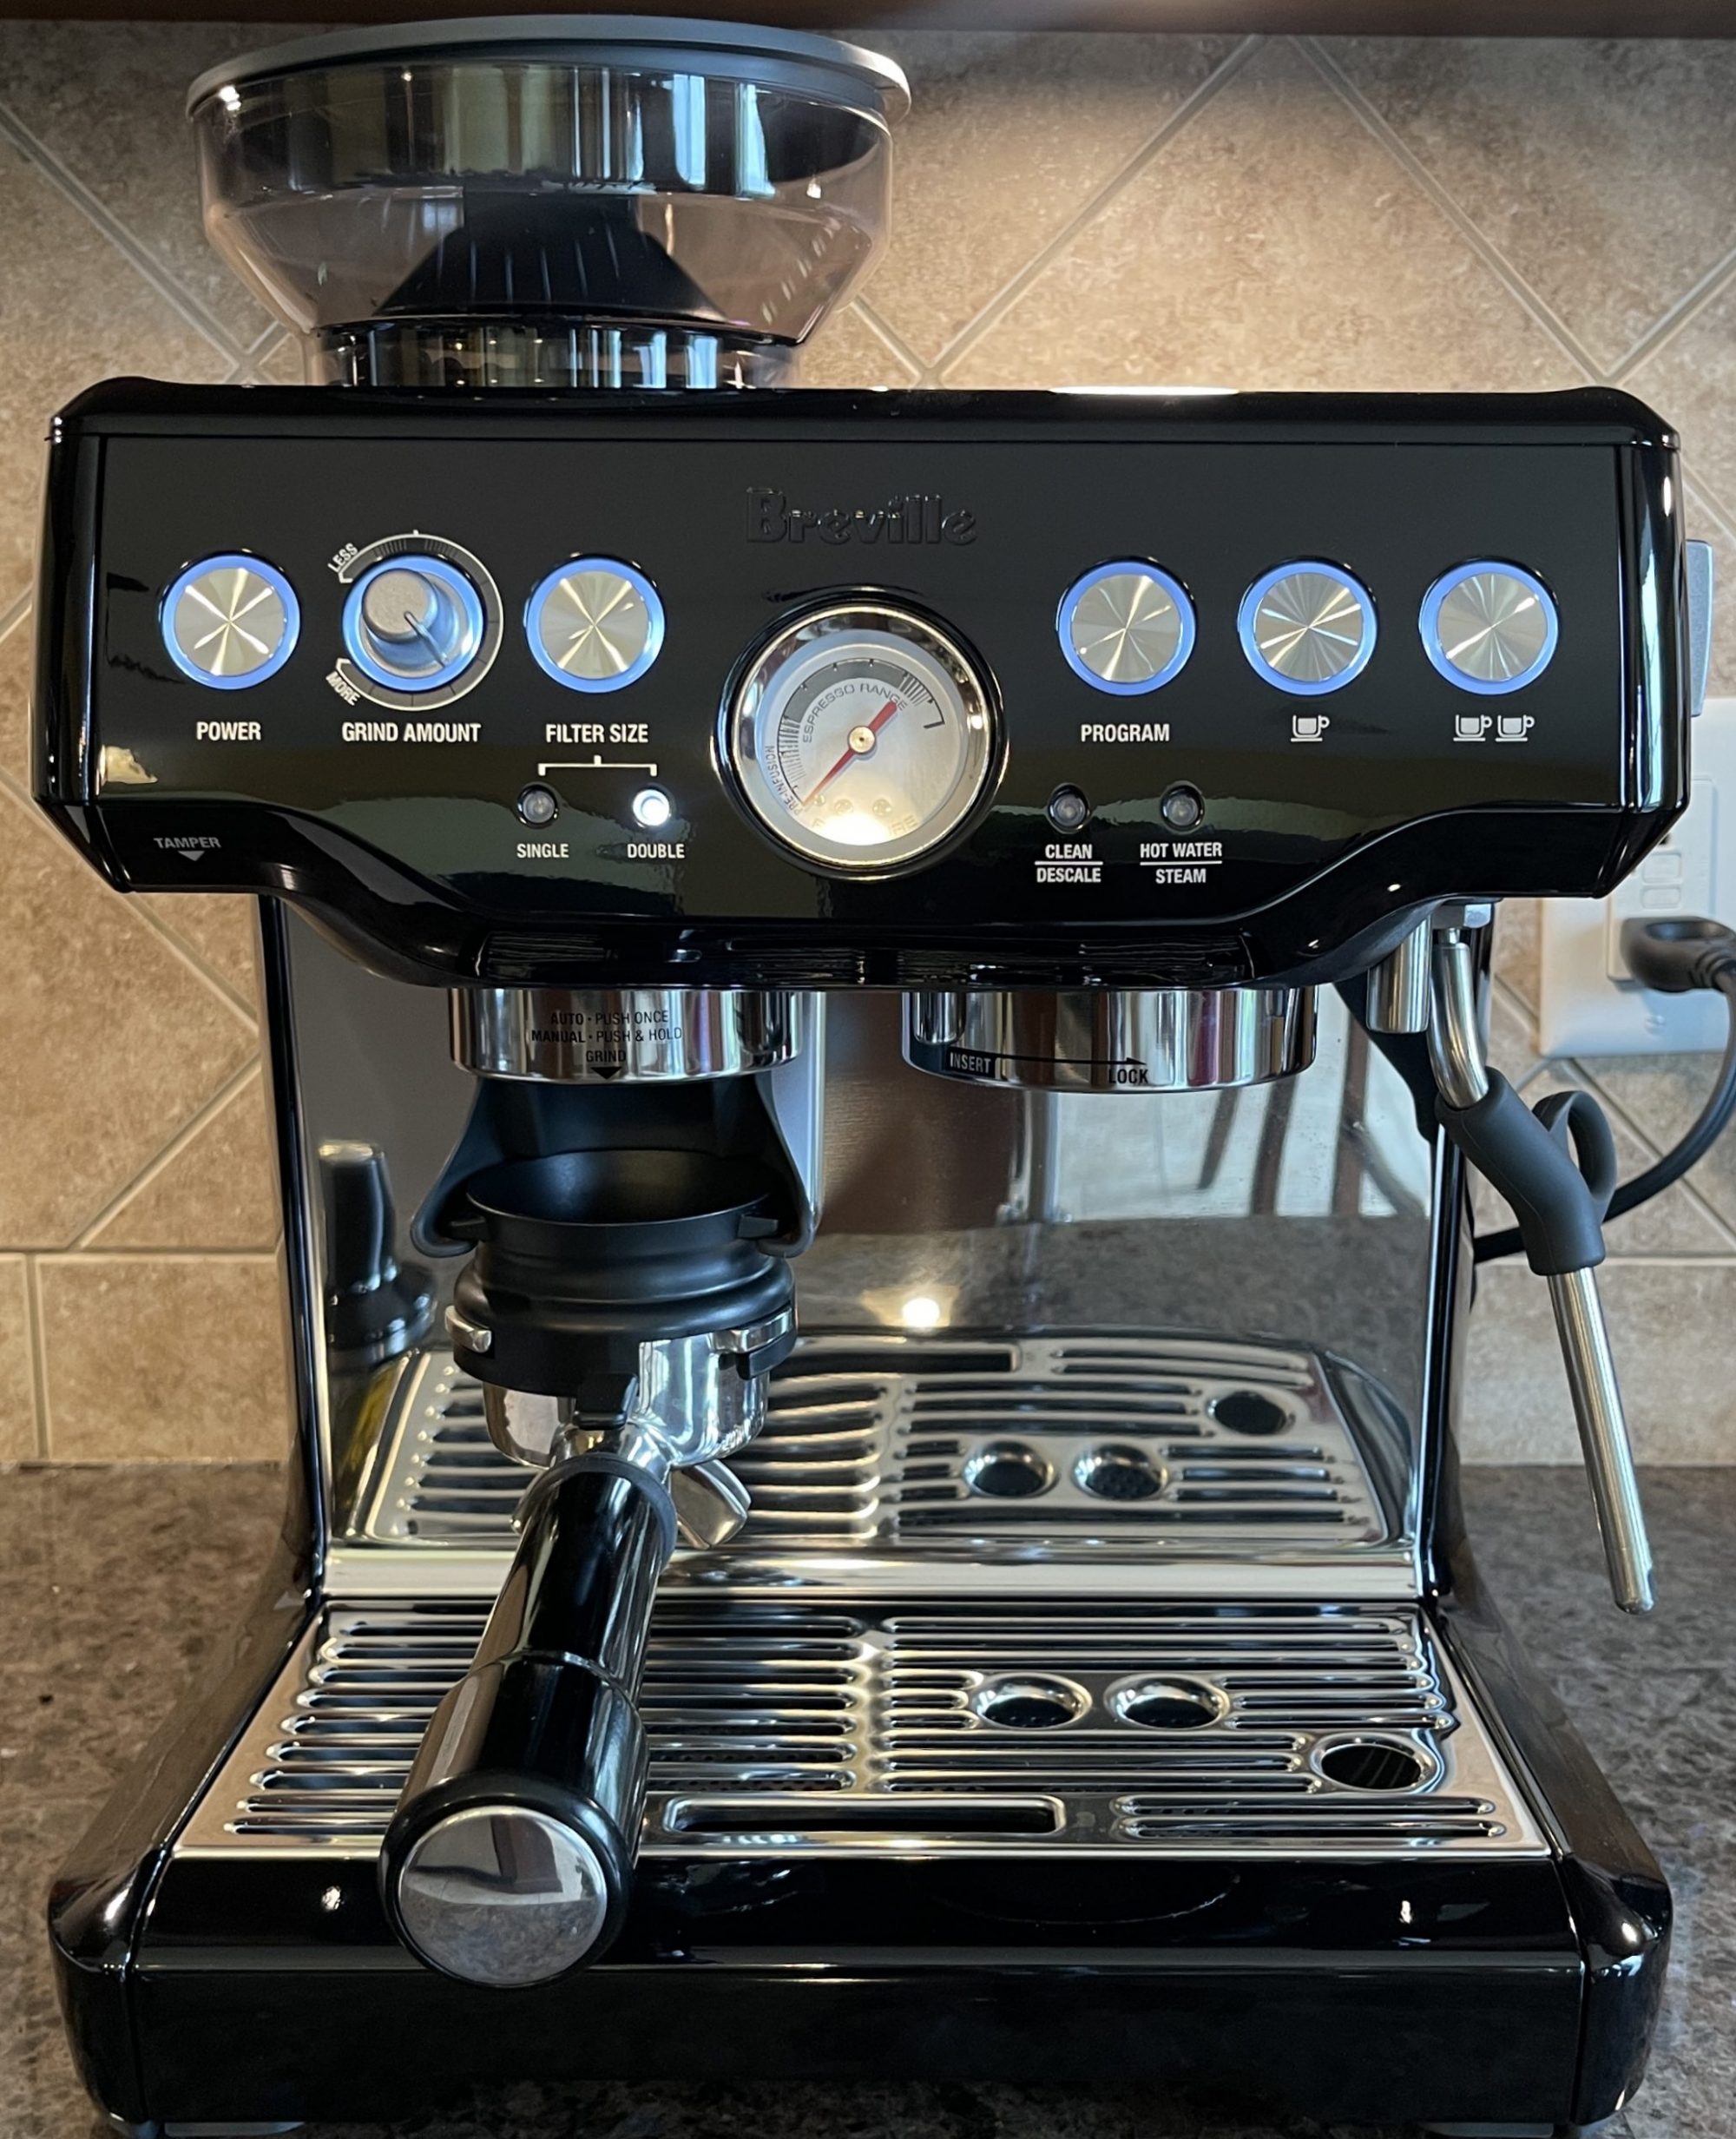 Breville Barista Express Espresso Machine, BES870XL, 54MM